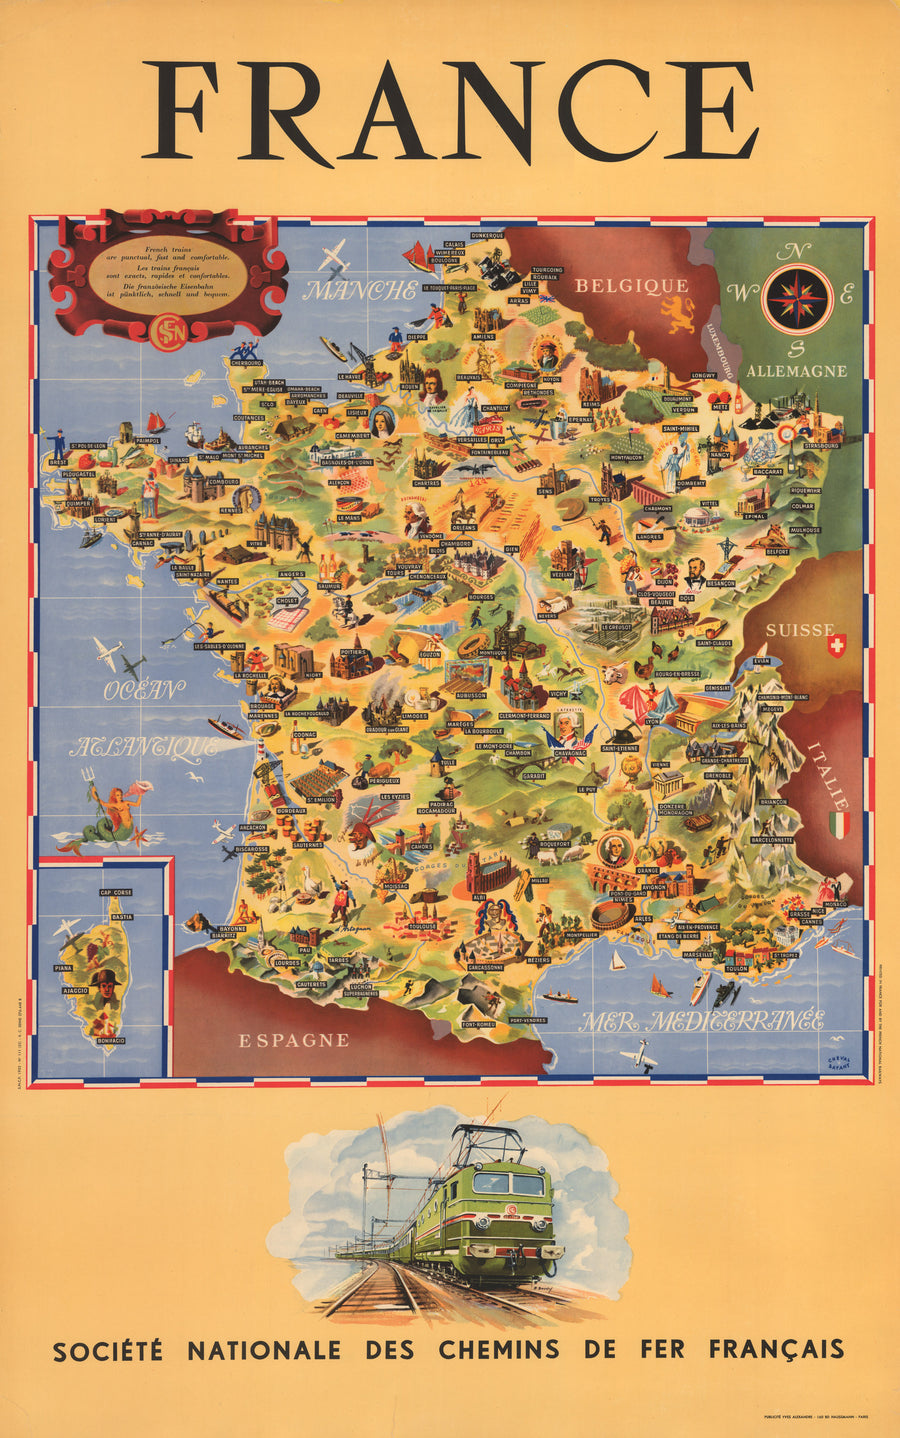 Vintage, mid-century, travel poster : France, Societe Nationale des Chemins de fer Francais